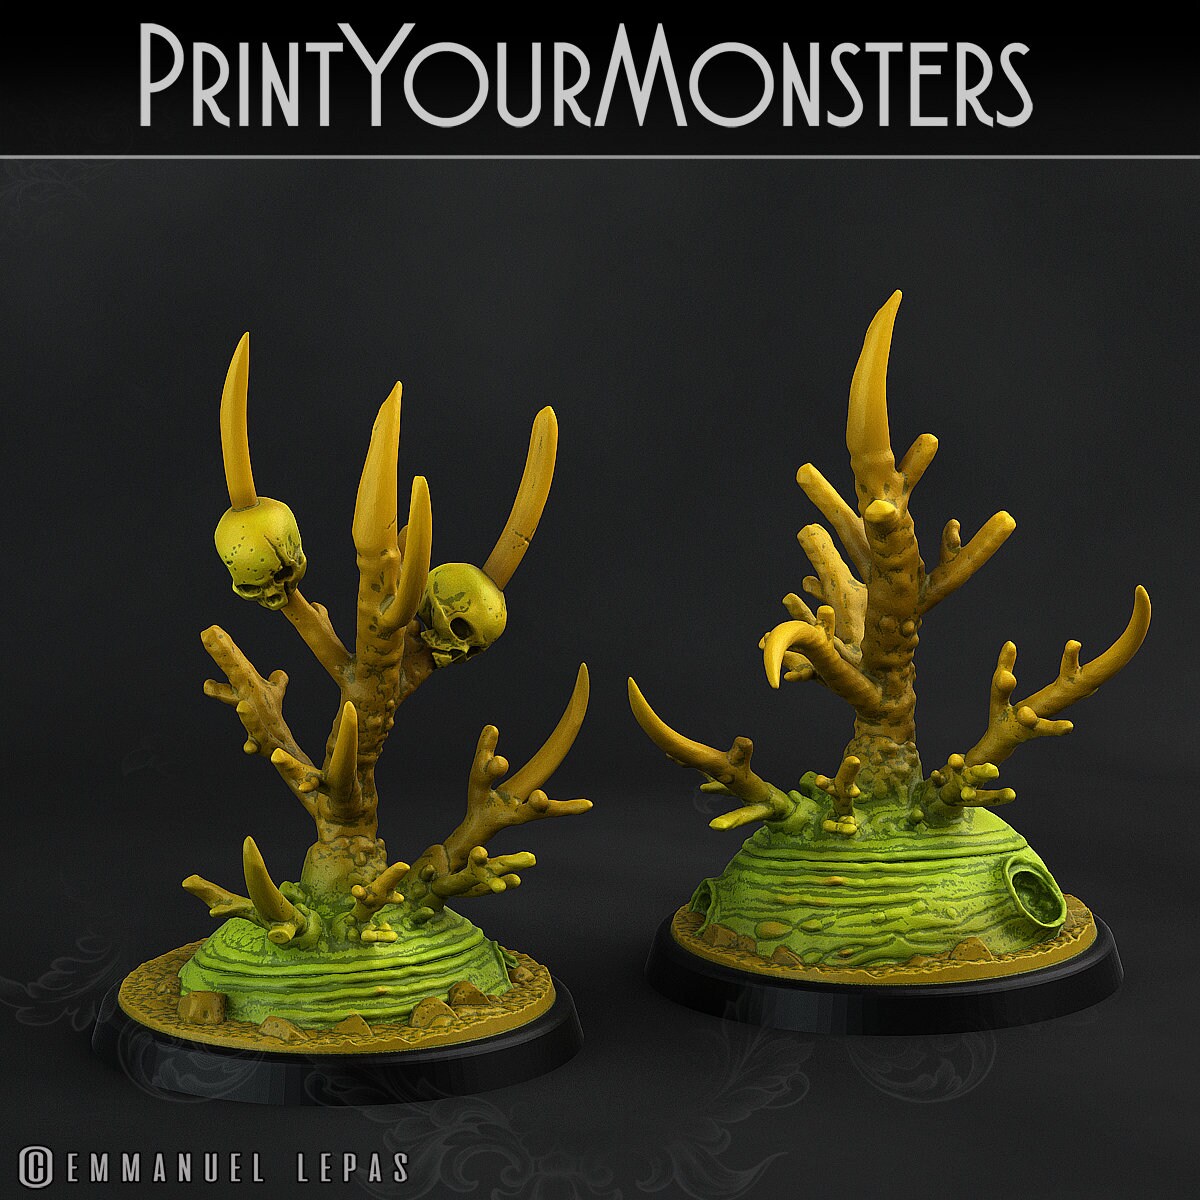 Deathorn Bush - Print Your Monsters 